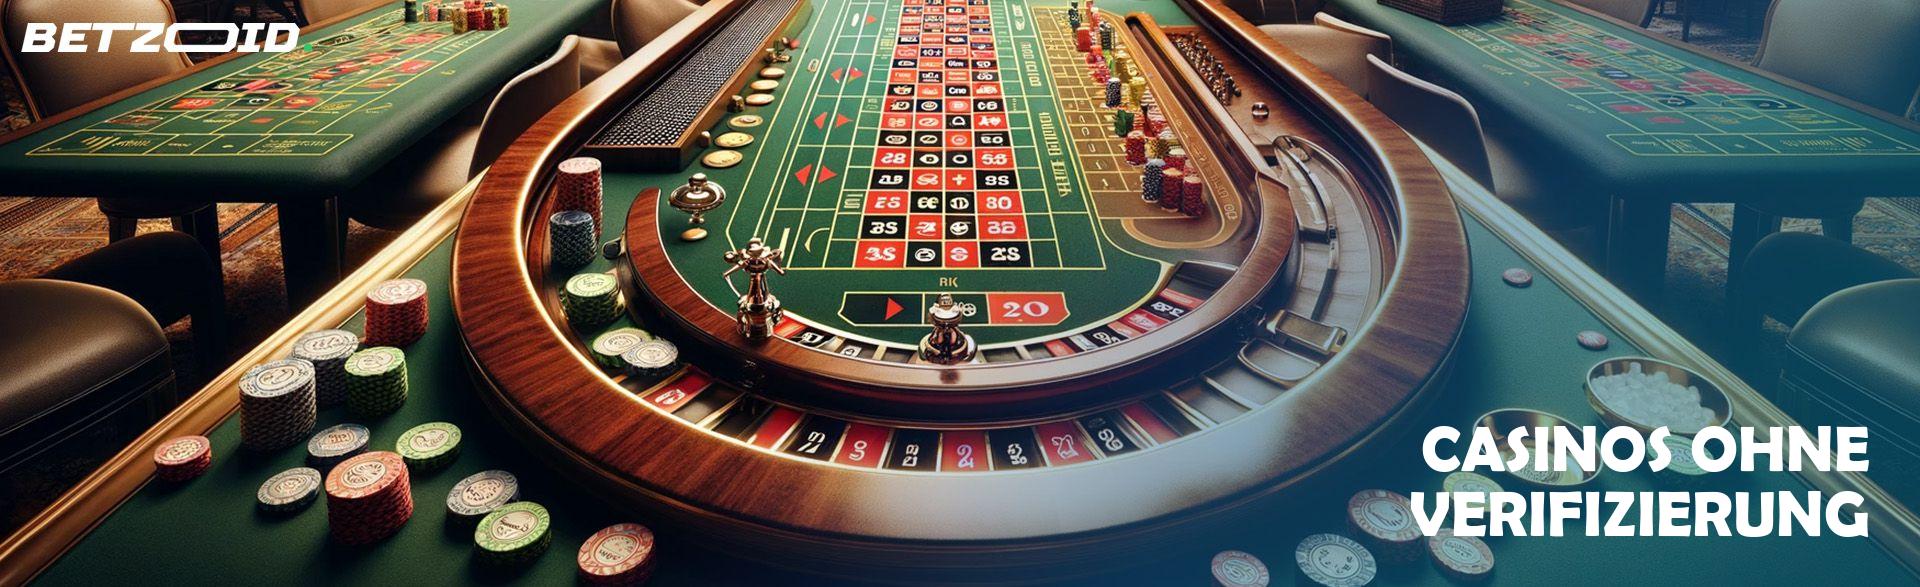 Casinos ohne Verifizierung.